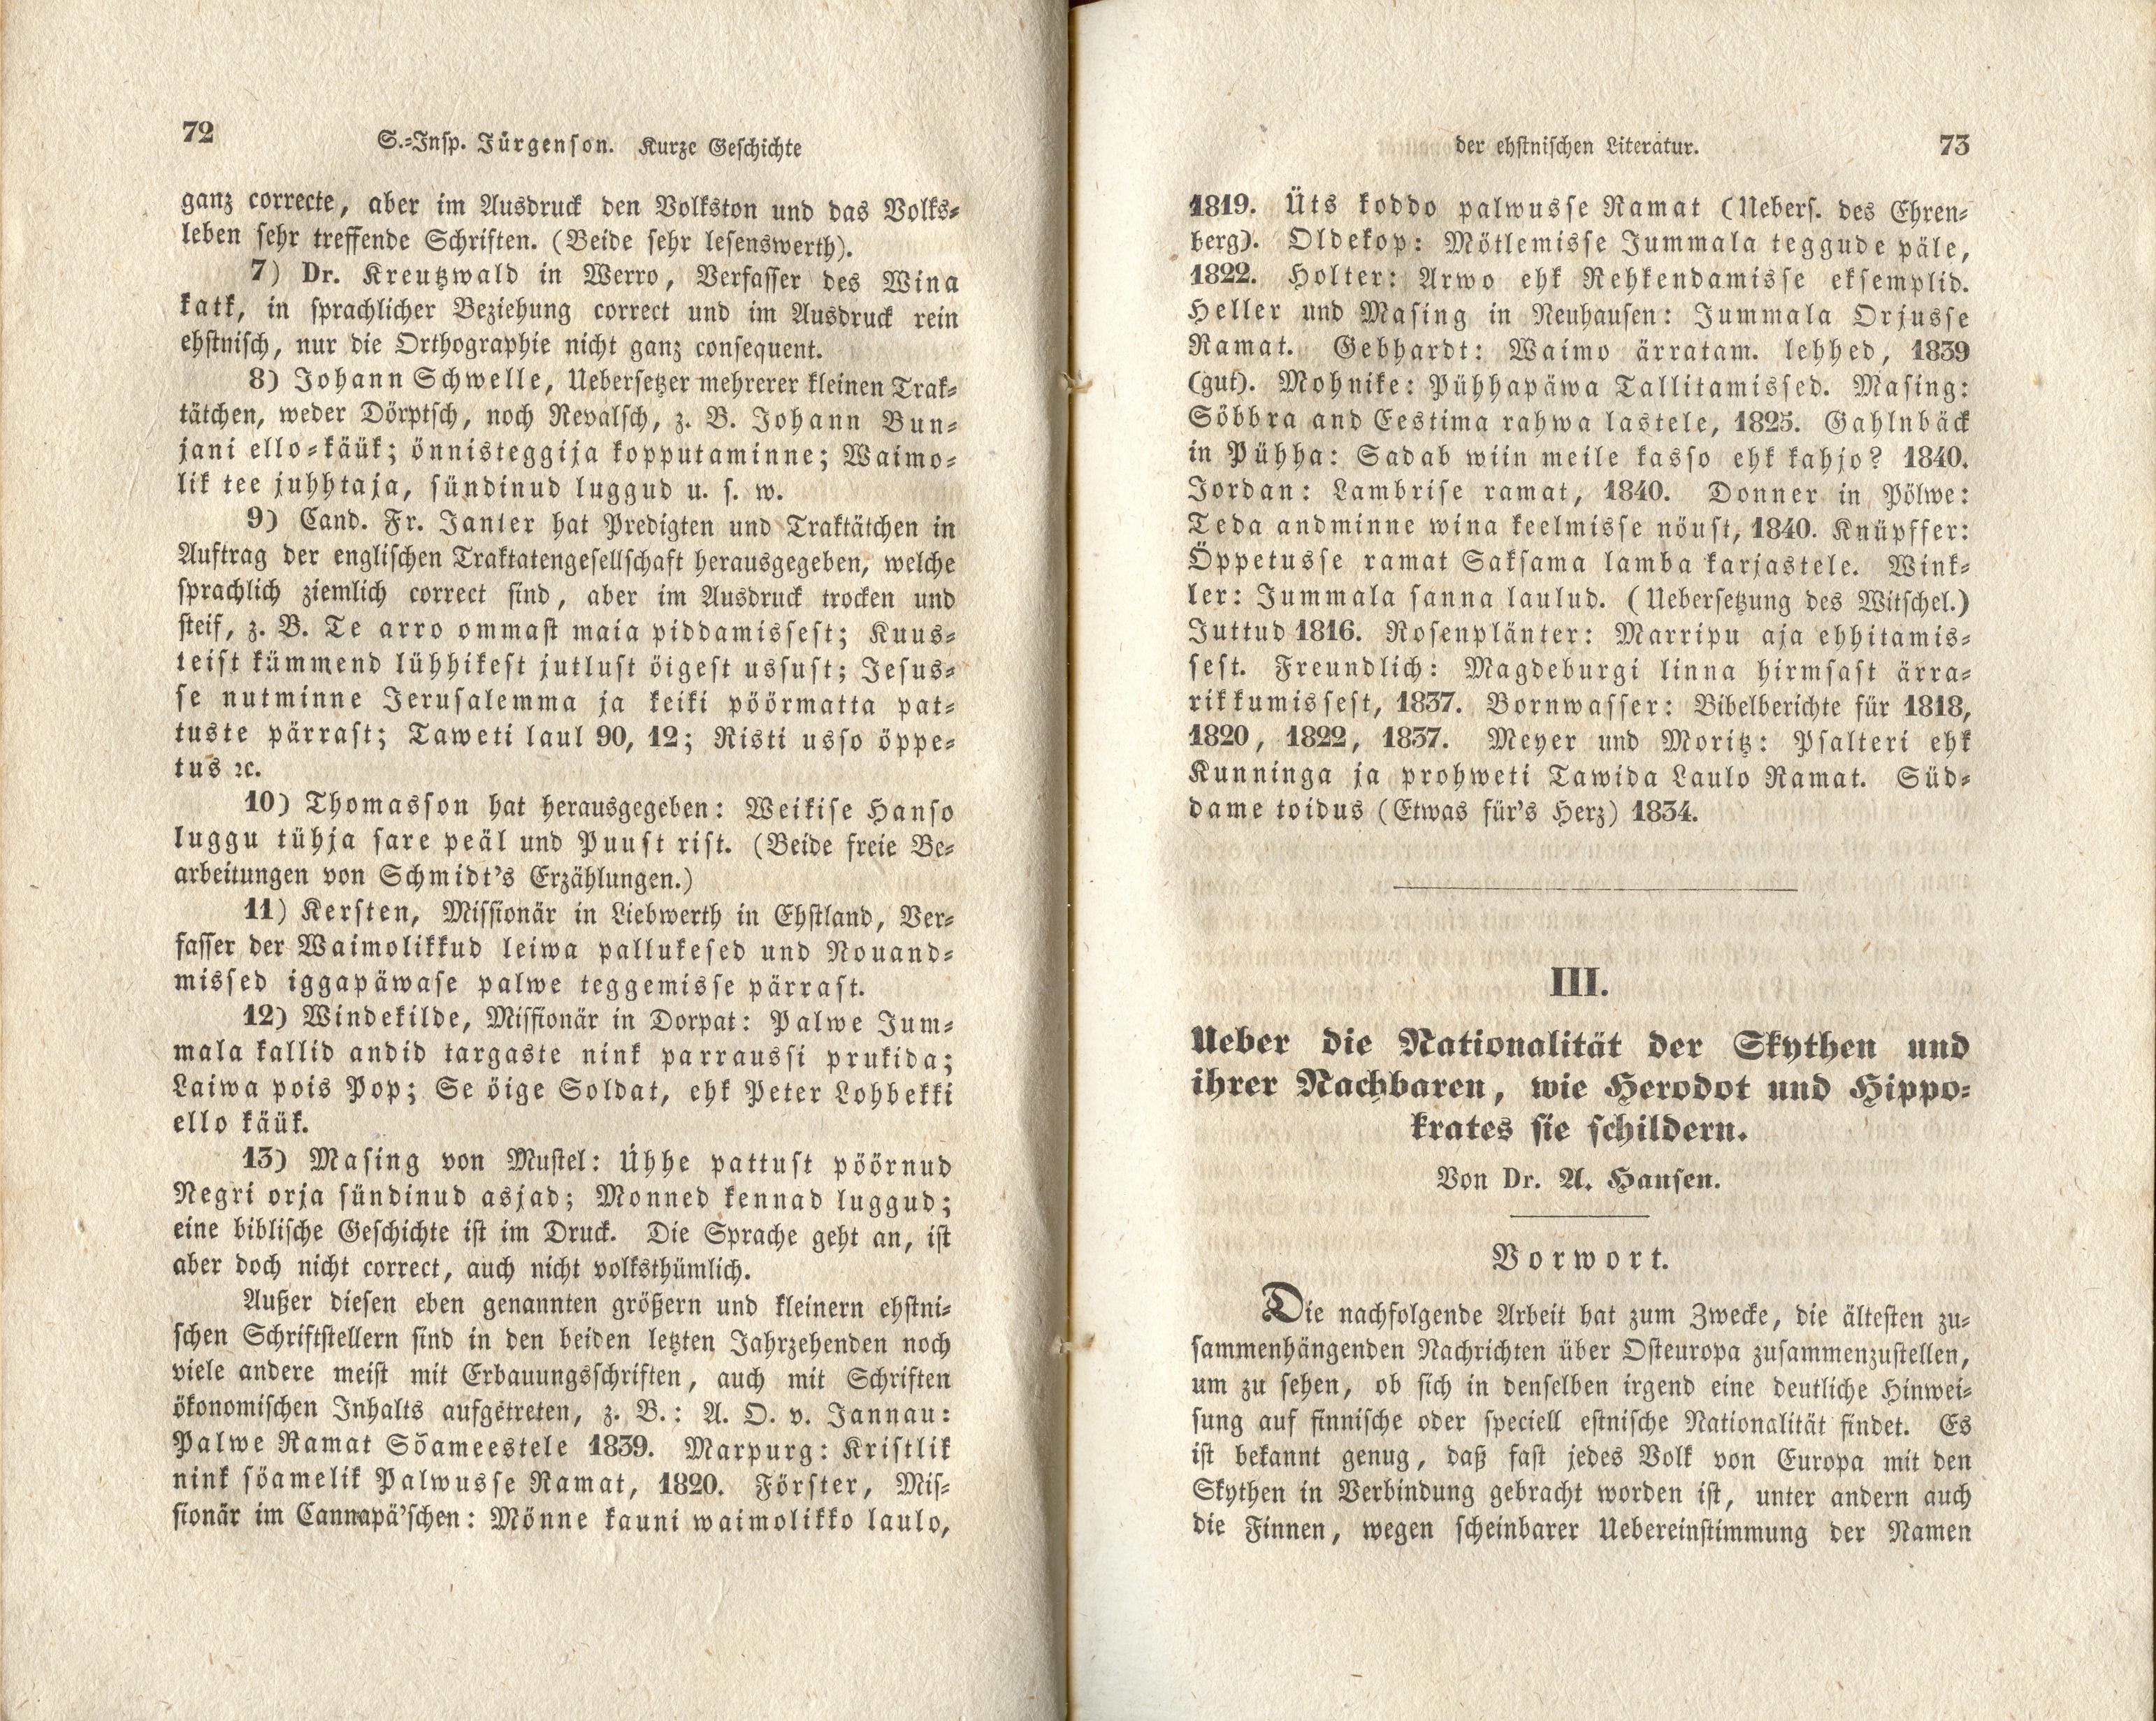 Verhandlungen der GEG [1] (1844) | 16. (72-73) Main body of text